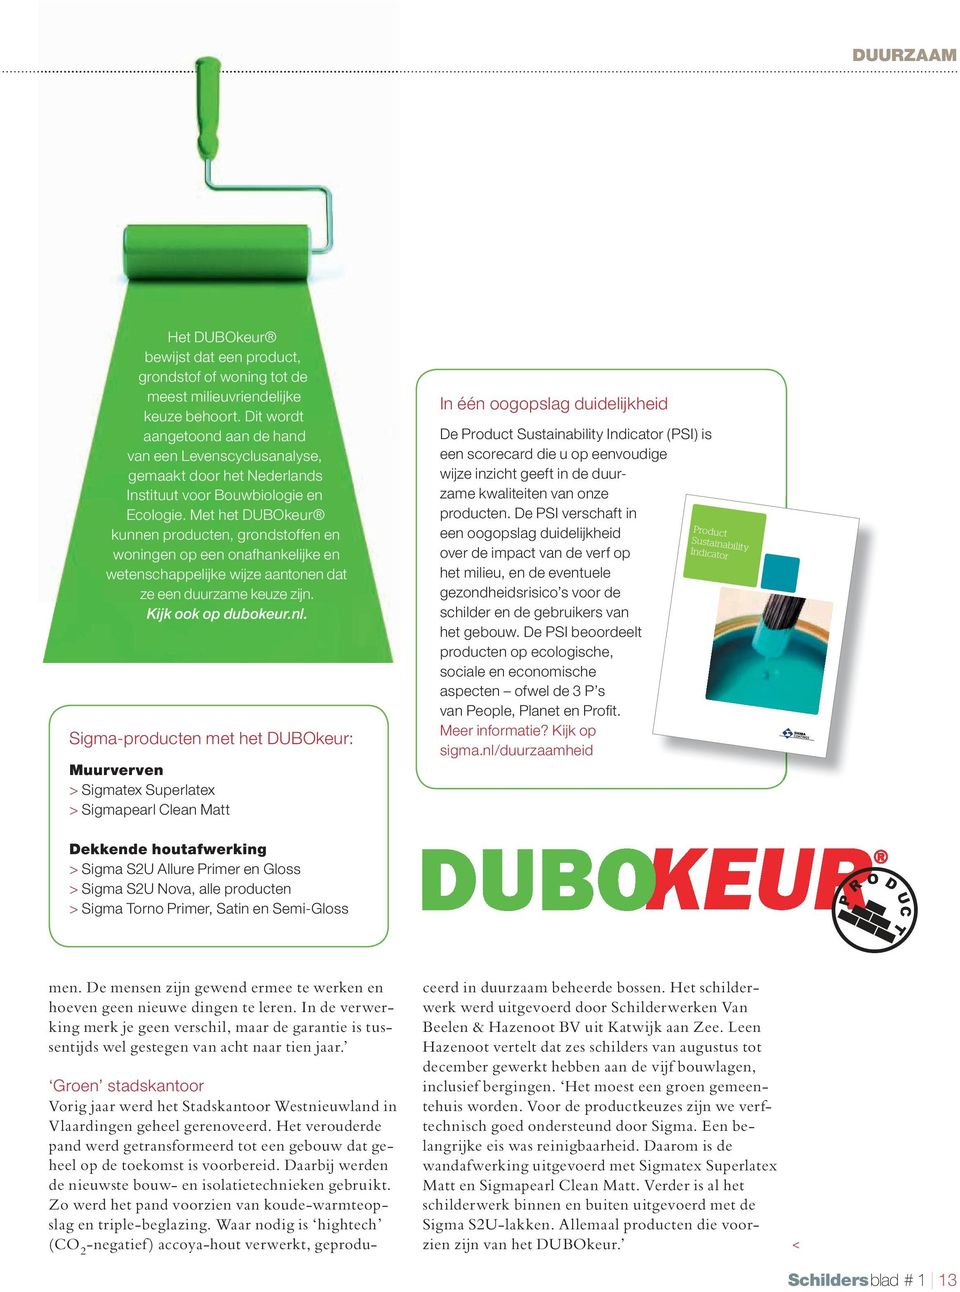 Met het DUBOkeur kunnen producten, grondstoffen en woningen op een onafhankelijke en wetenschappelijke wijze aantonen dat ze een duurzame keuze zijn. Kijk ook op dubokeur.nl.